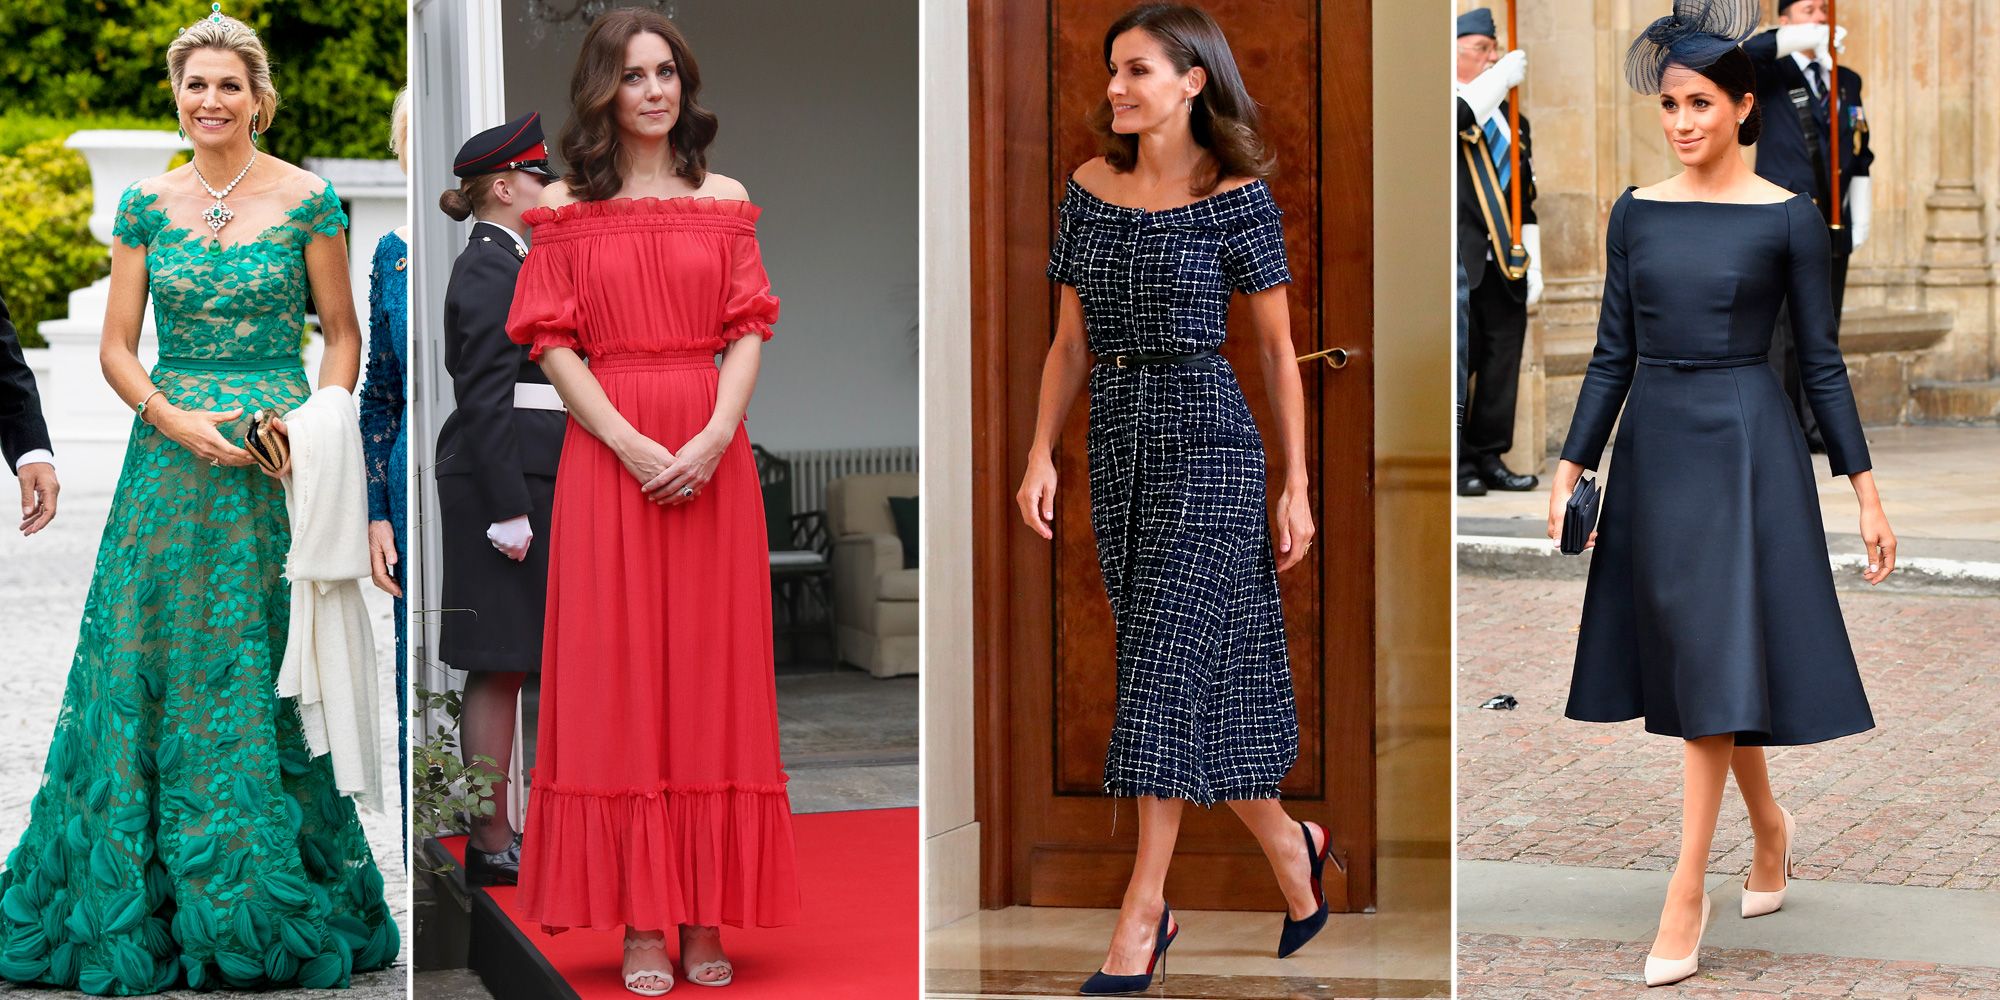 moda: El vestido naranja que podría llevar la reina Letizia en verano